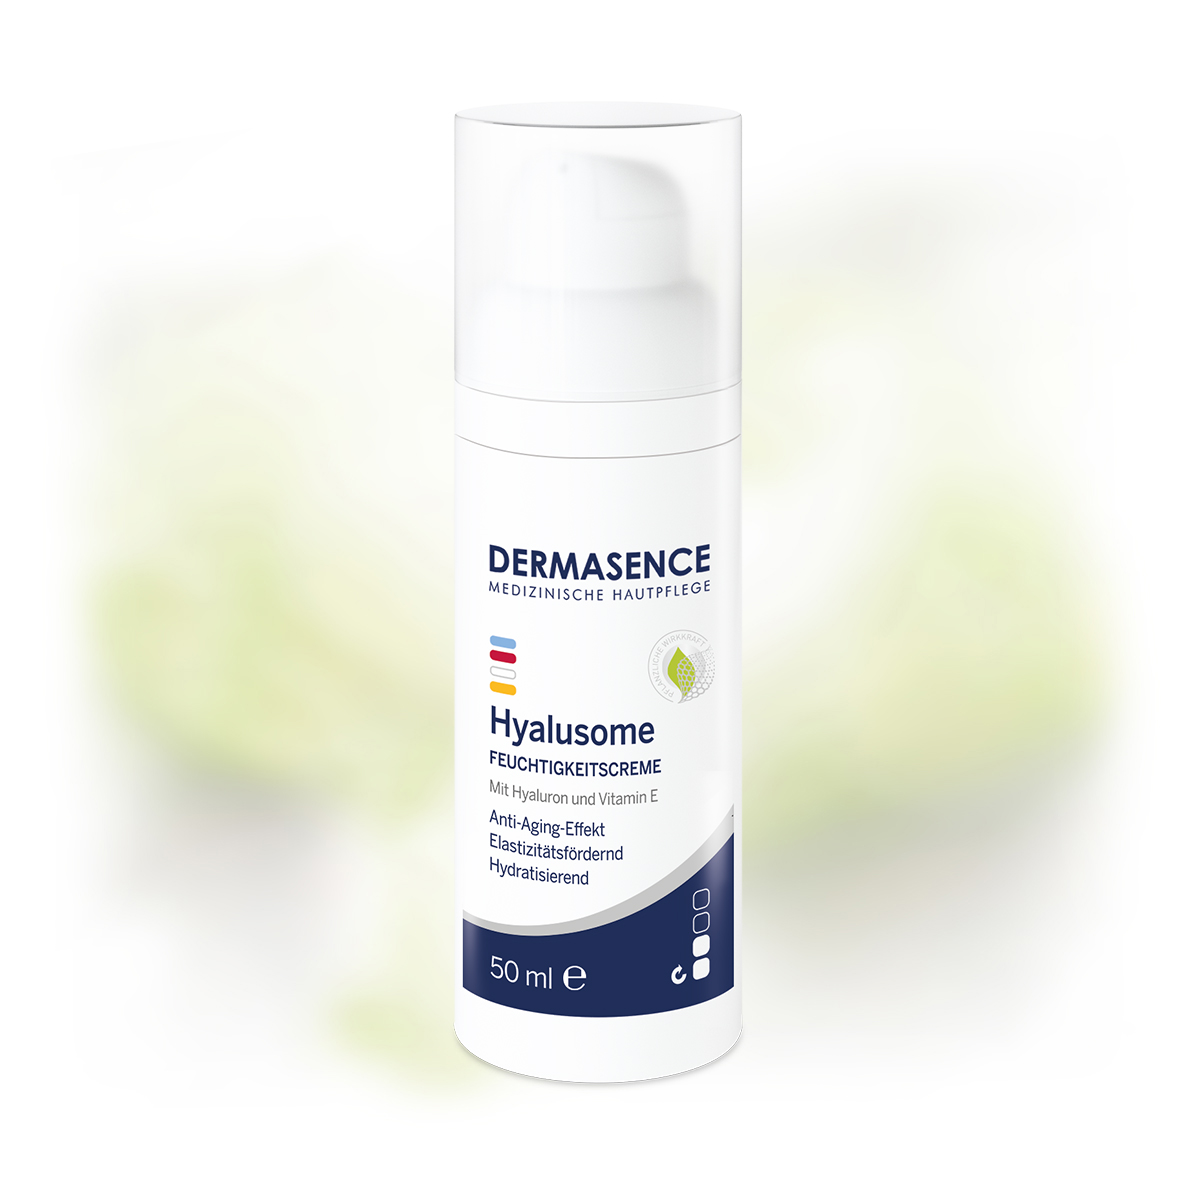 DERMASENCE Hyalusome Moisturising cream, 50 ml